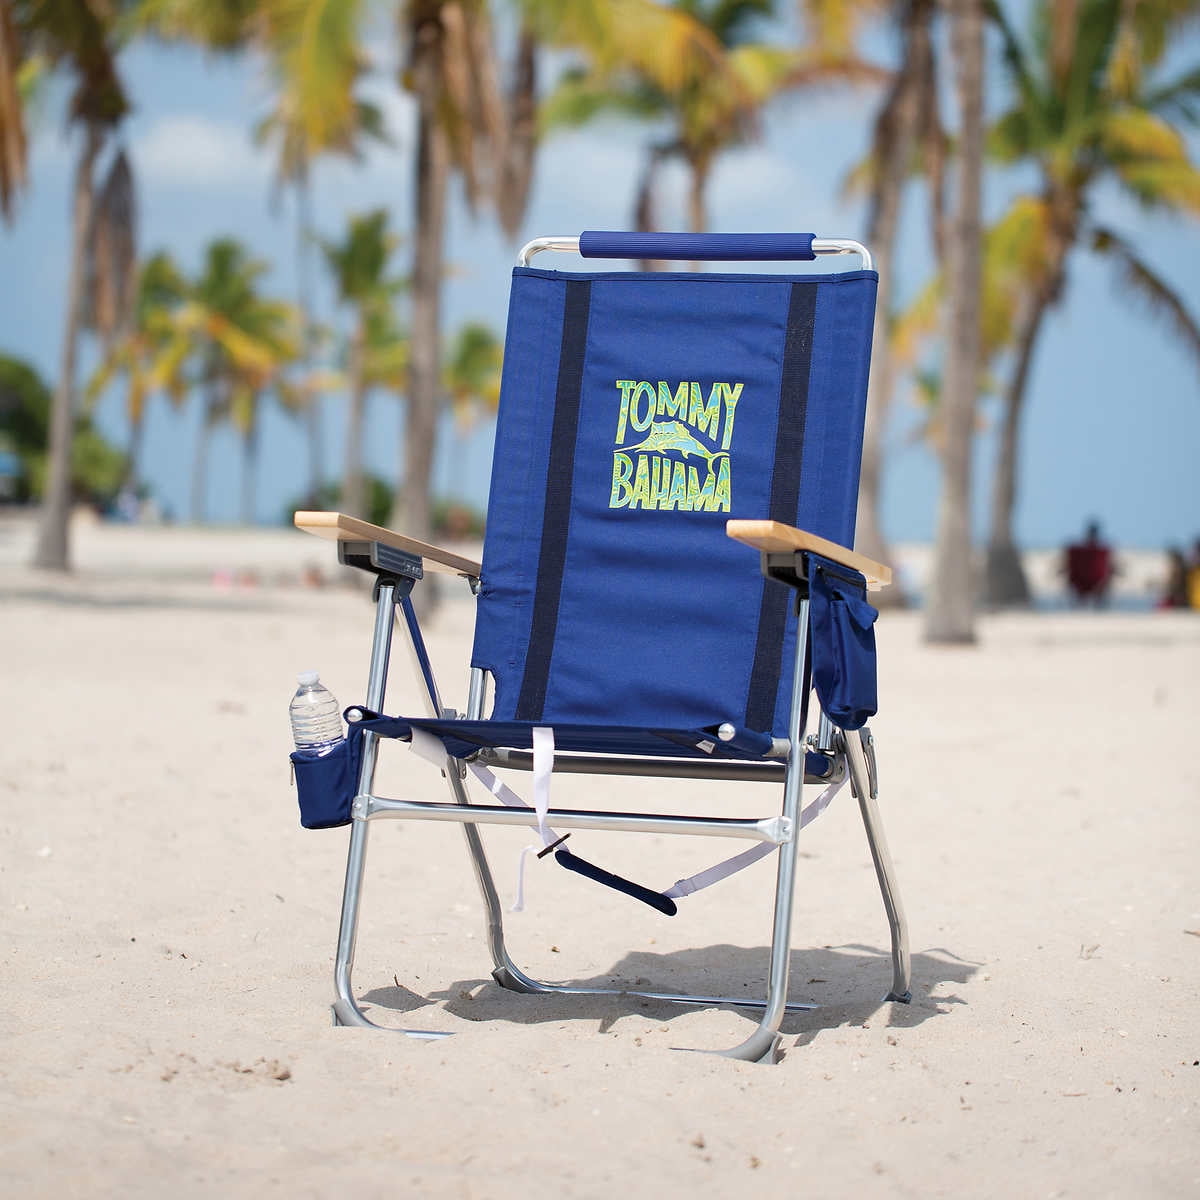 Minimalist Thomas Bahamas Beach Chair with Simple Decor